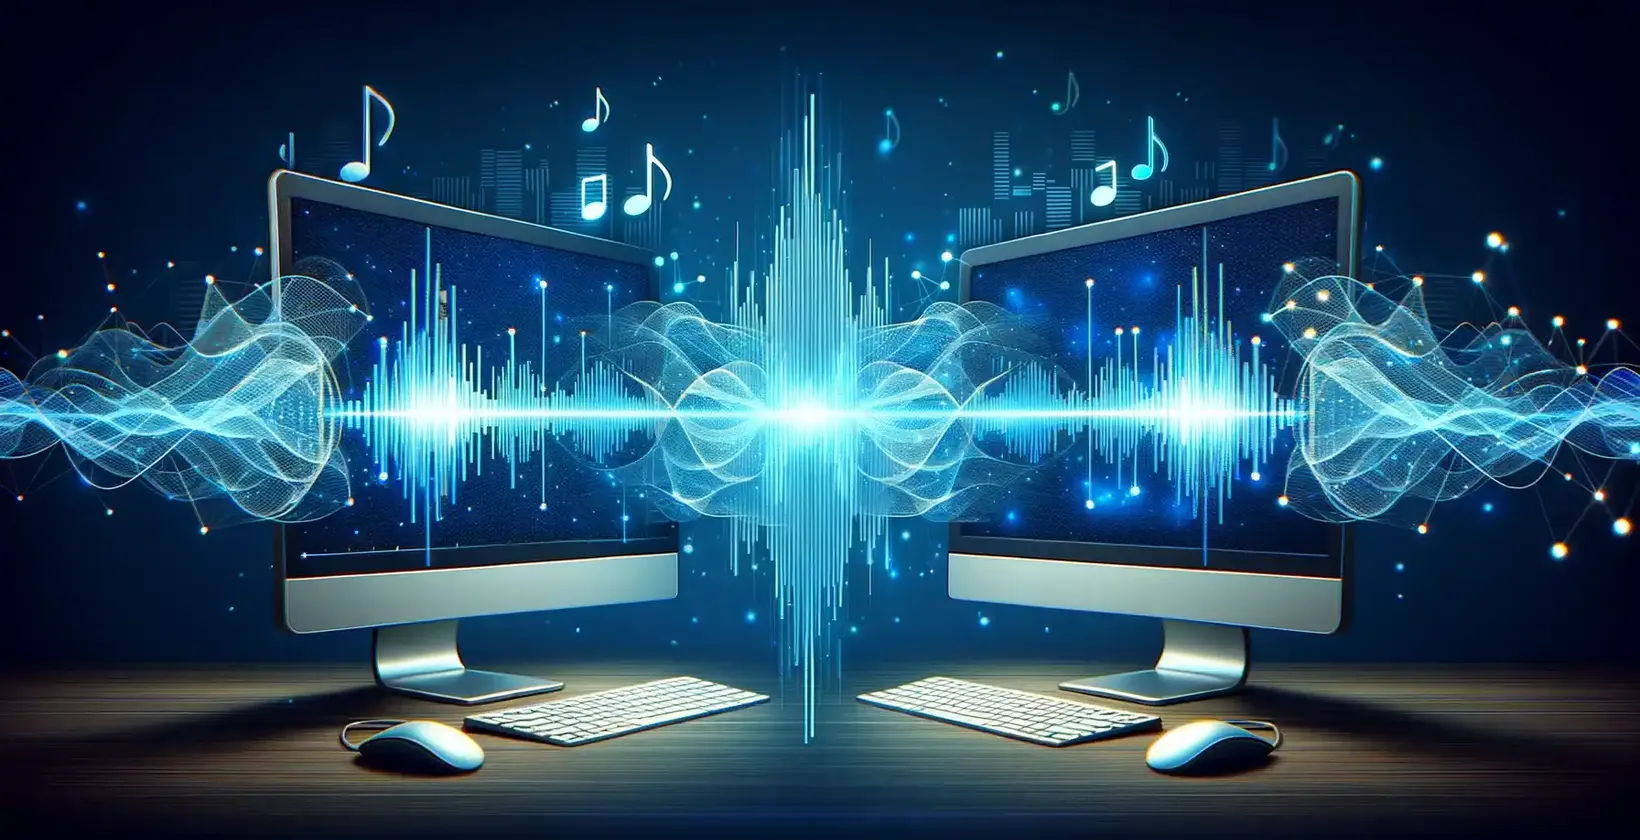 संगीत नोट्स और ध्वनि तरंगों का प्रदर्शन करने वाली दो कंप्यूटर स्क्रीन, ऑडियो विज़ुअलाइज़ेशन को दर्शाती हैं।